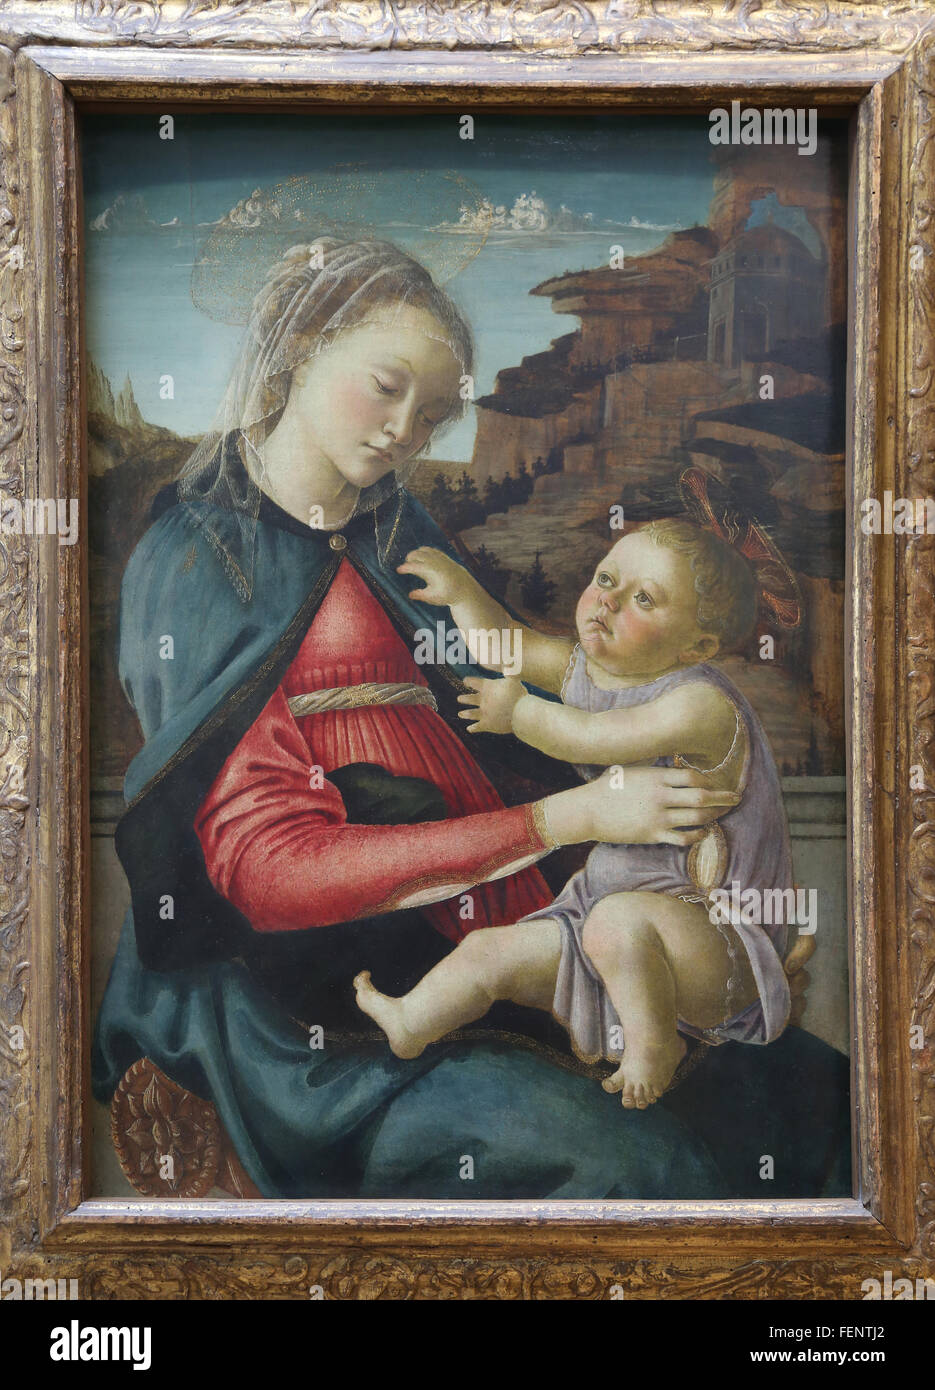 La Madonna e il Bambino, 1465-1470. Tempera su pannello. Da Sandro Botticelli (1445-1510). Pittore italiano. Renaissance. Il museo del Louvre. Foto Stock